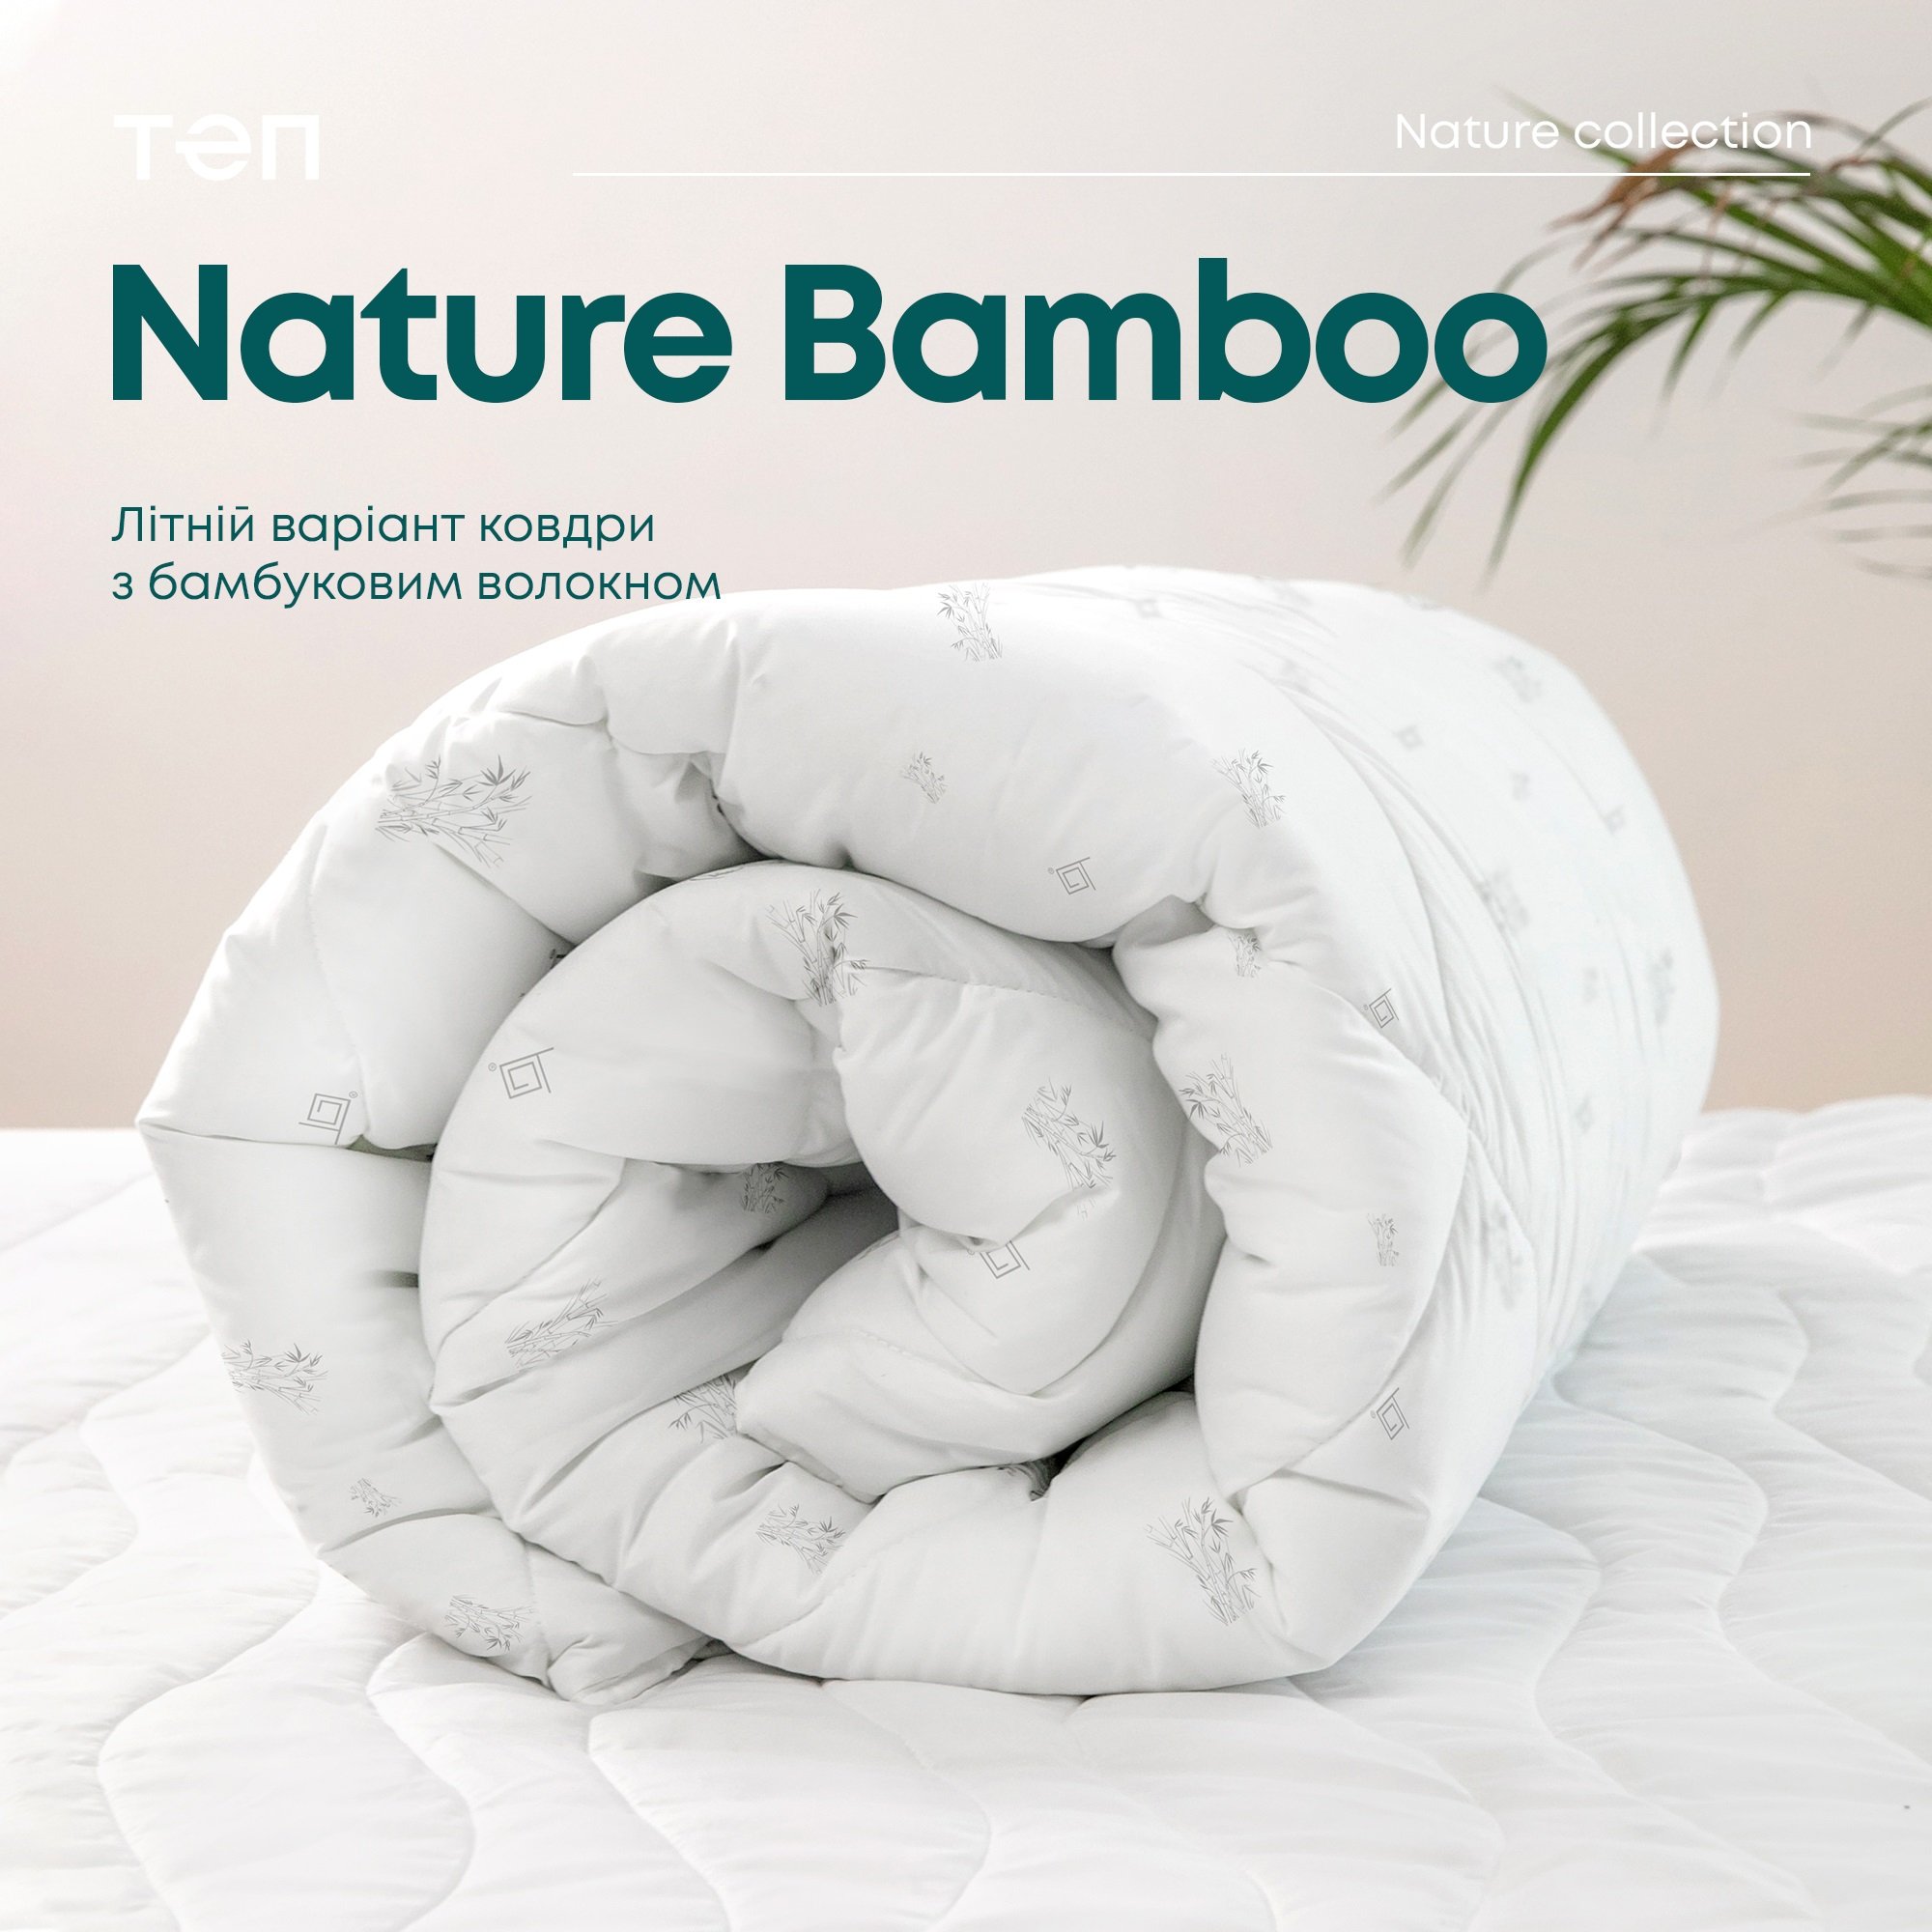 Одеяло ТЕП Природа Membrana Print Bamboo Summer Line 180х210 см белое (1-03999_00000) - фото 8